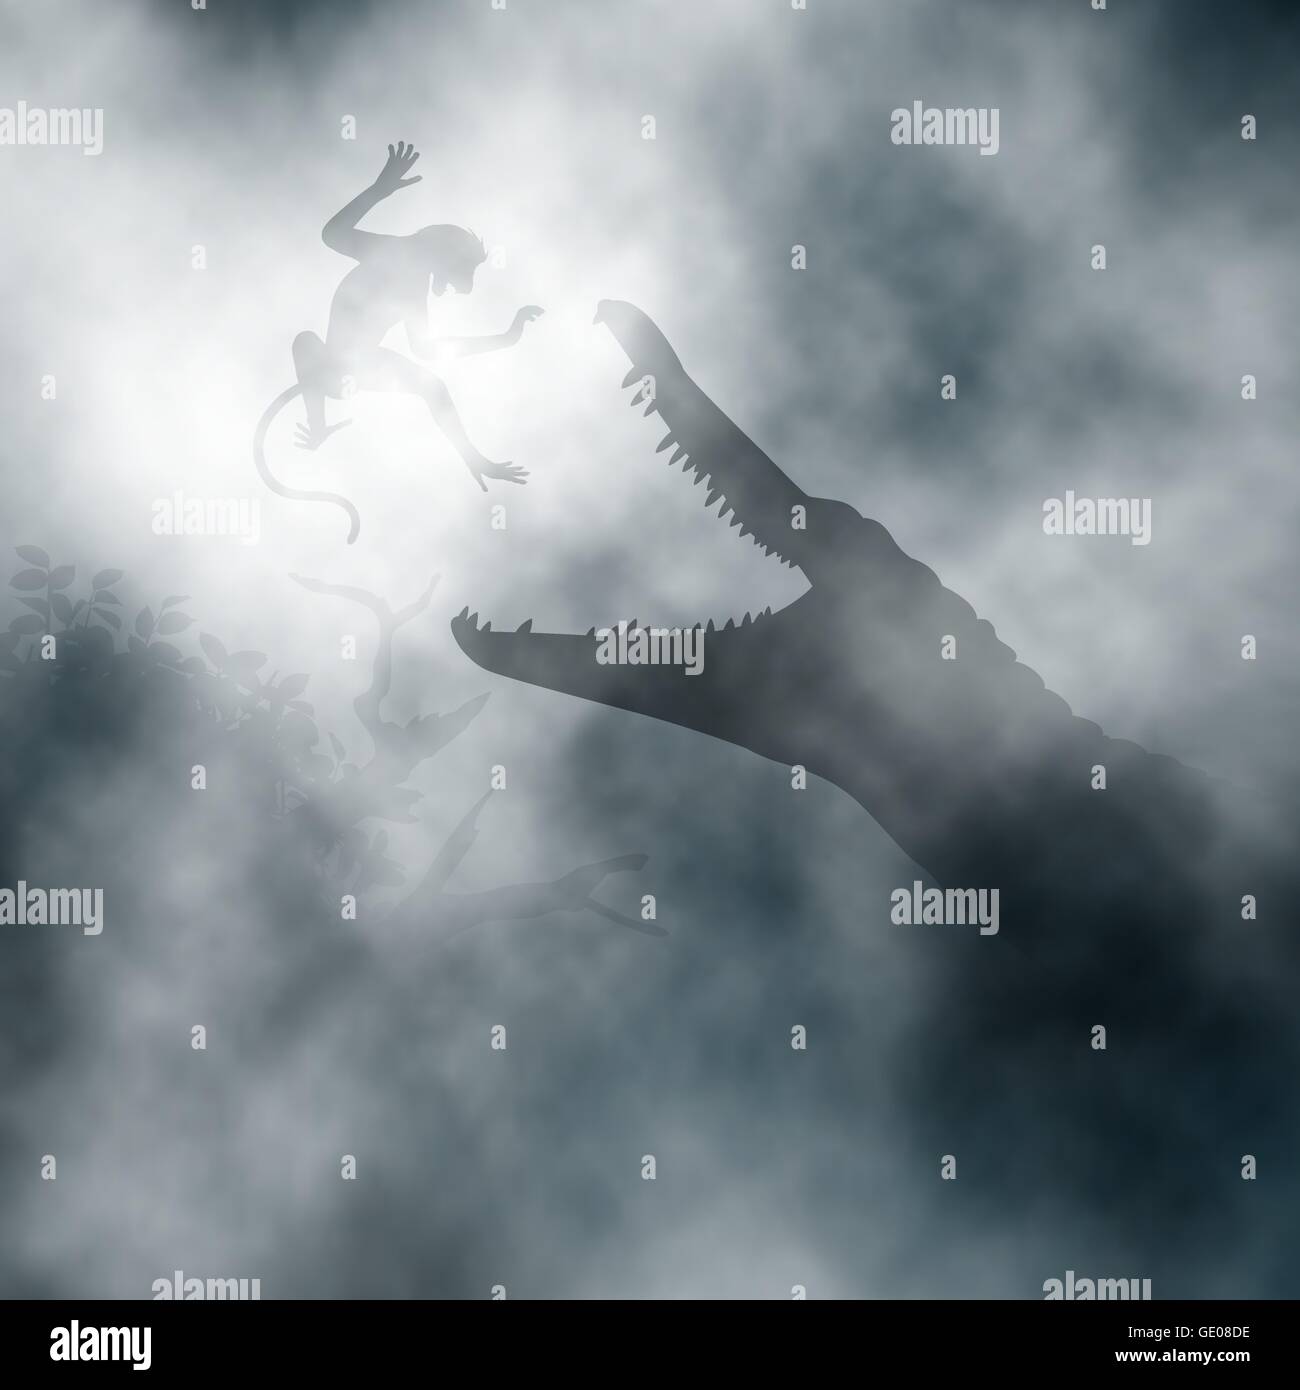 Modificabile illustrazione vettoriale di un coccodrillo a caccia di una scimmia in una nebbiosa palude creata utilizzando vettori gradienti Illustrazione Vettoriale